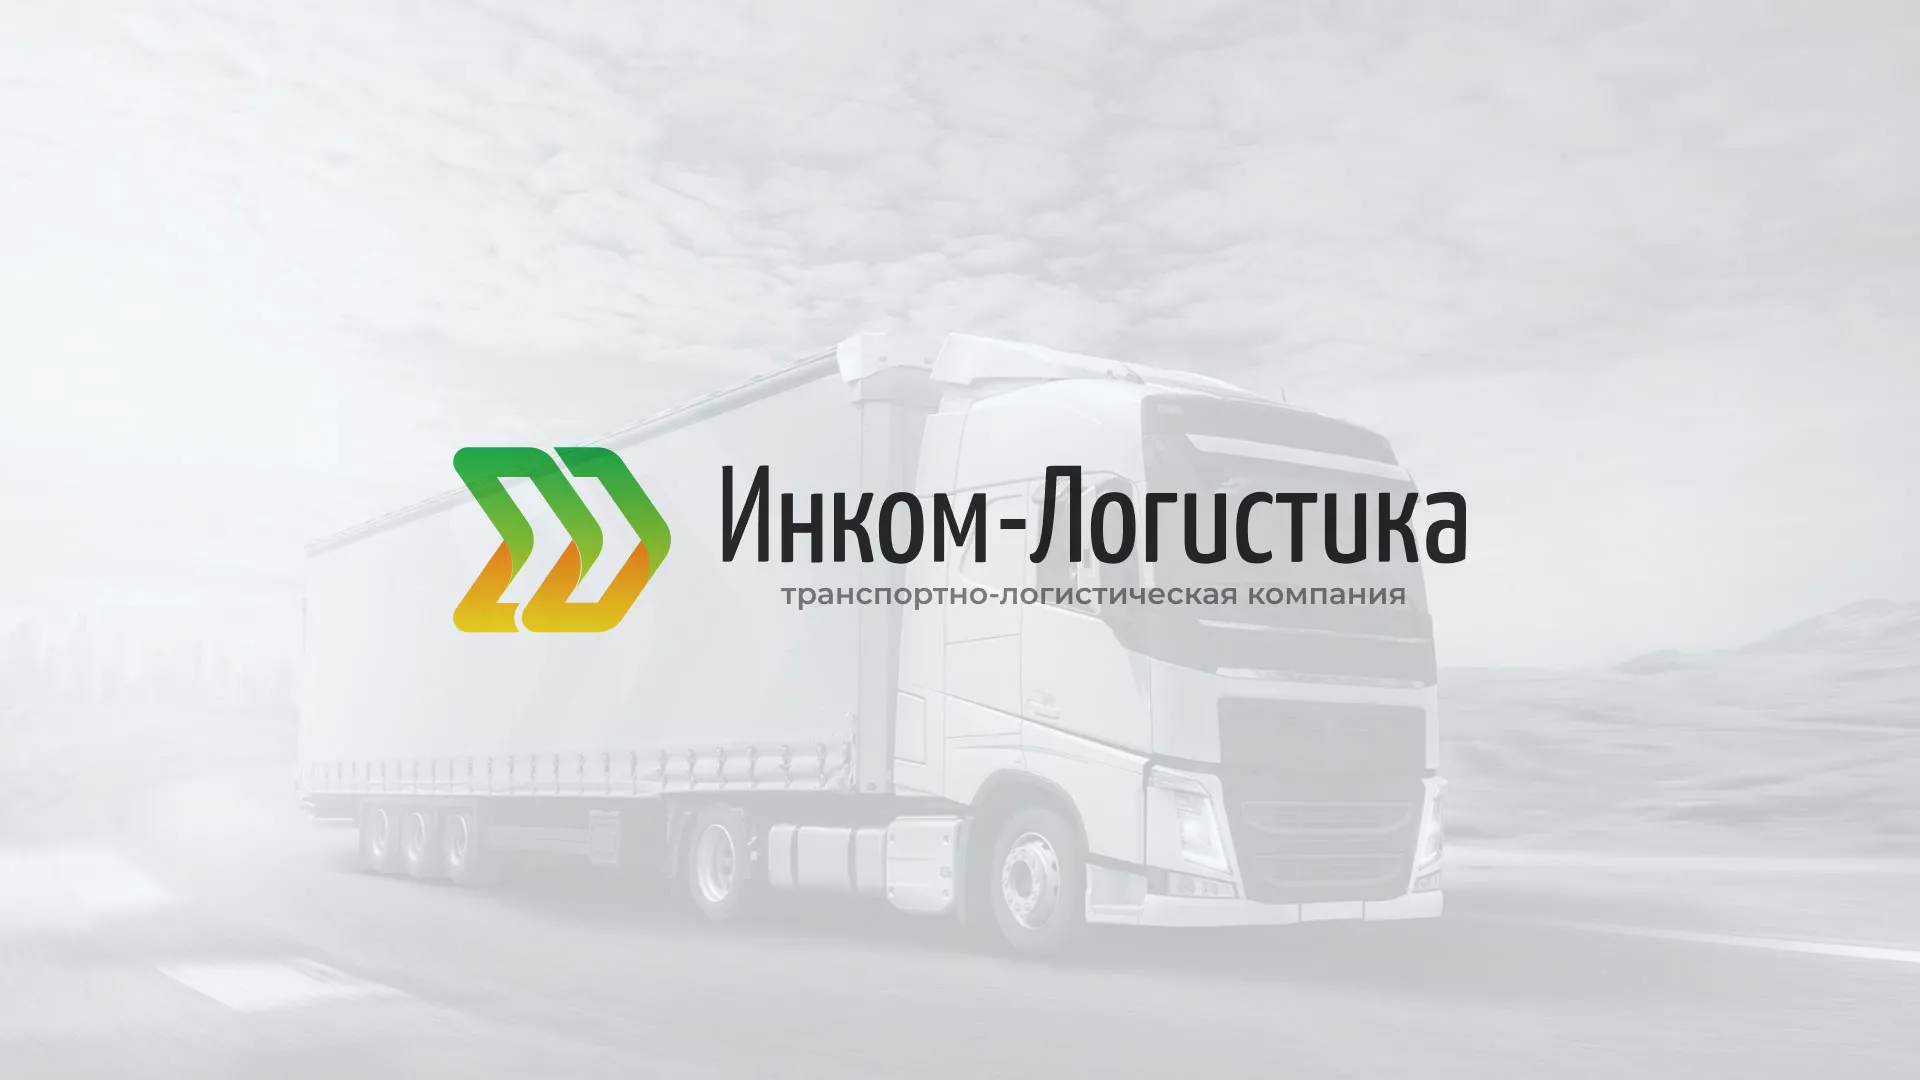 Разработка логотипа и сайта компании «Инком-Логистика» в Никольске